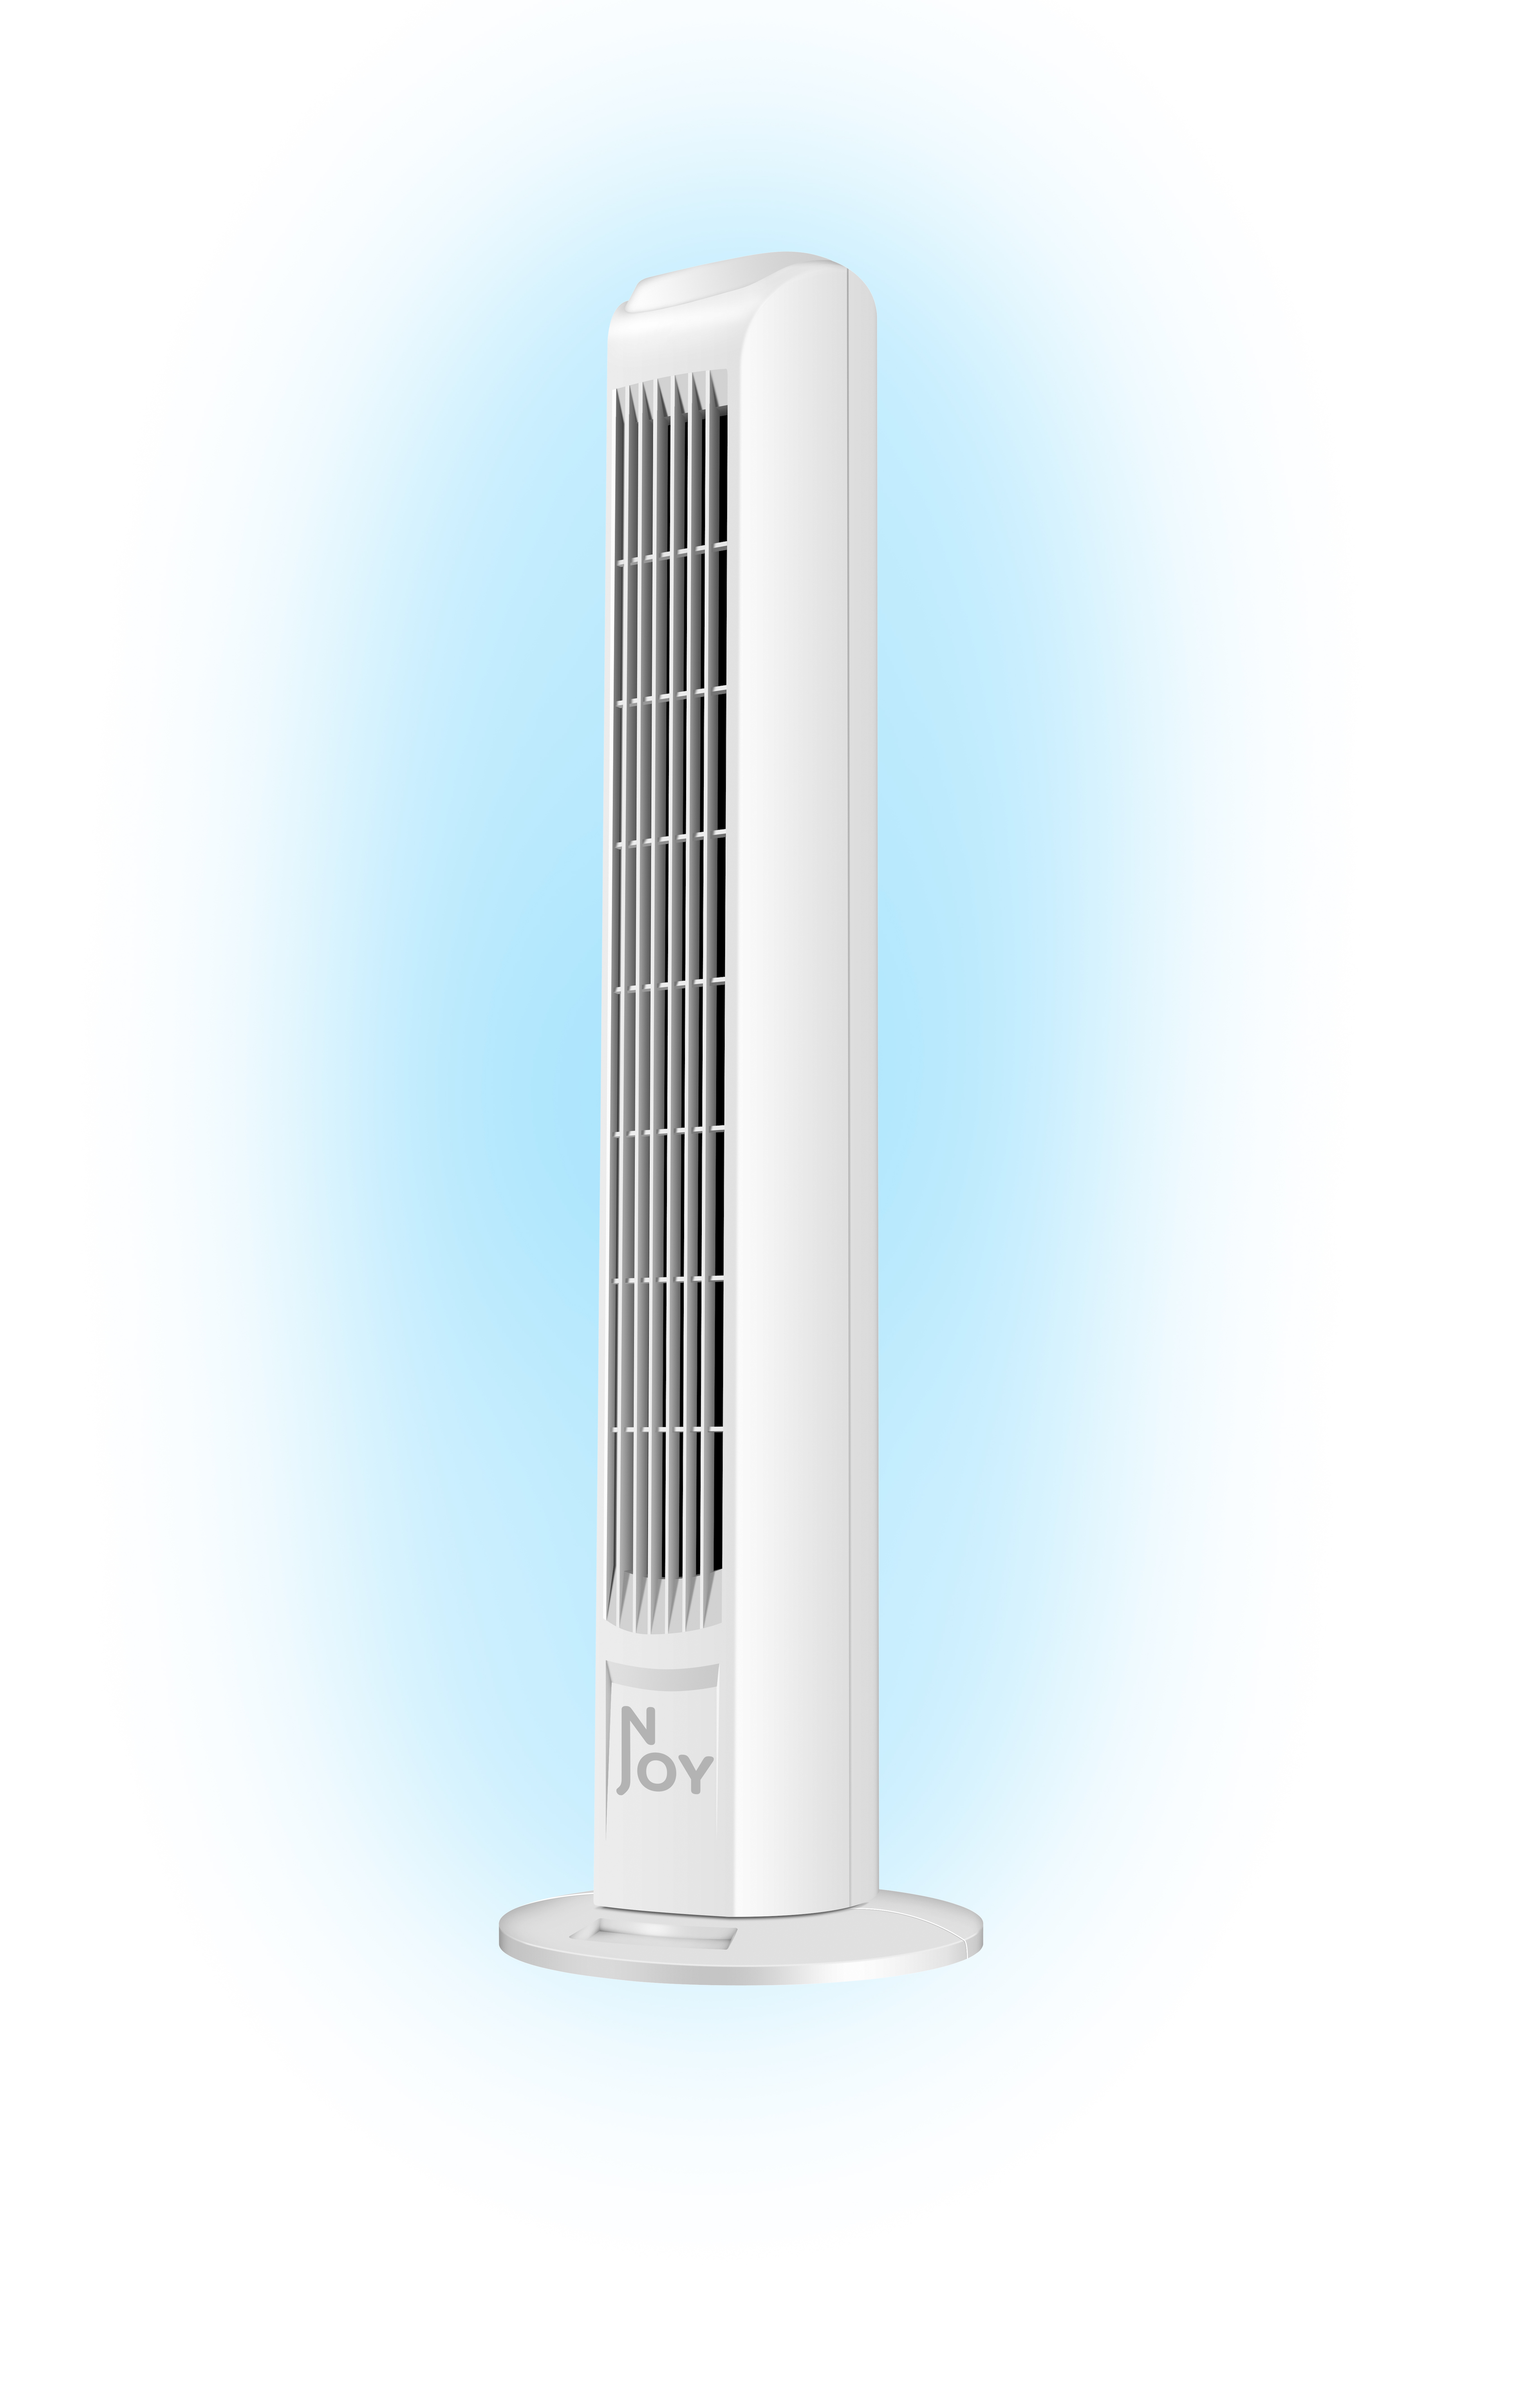 Sicher Geschwindigkeiten 50W - - - Weiß Superkuehlung Weiss - - 3 - Turm Turmventilator Turm Ventilator NJOY -